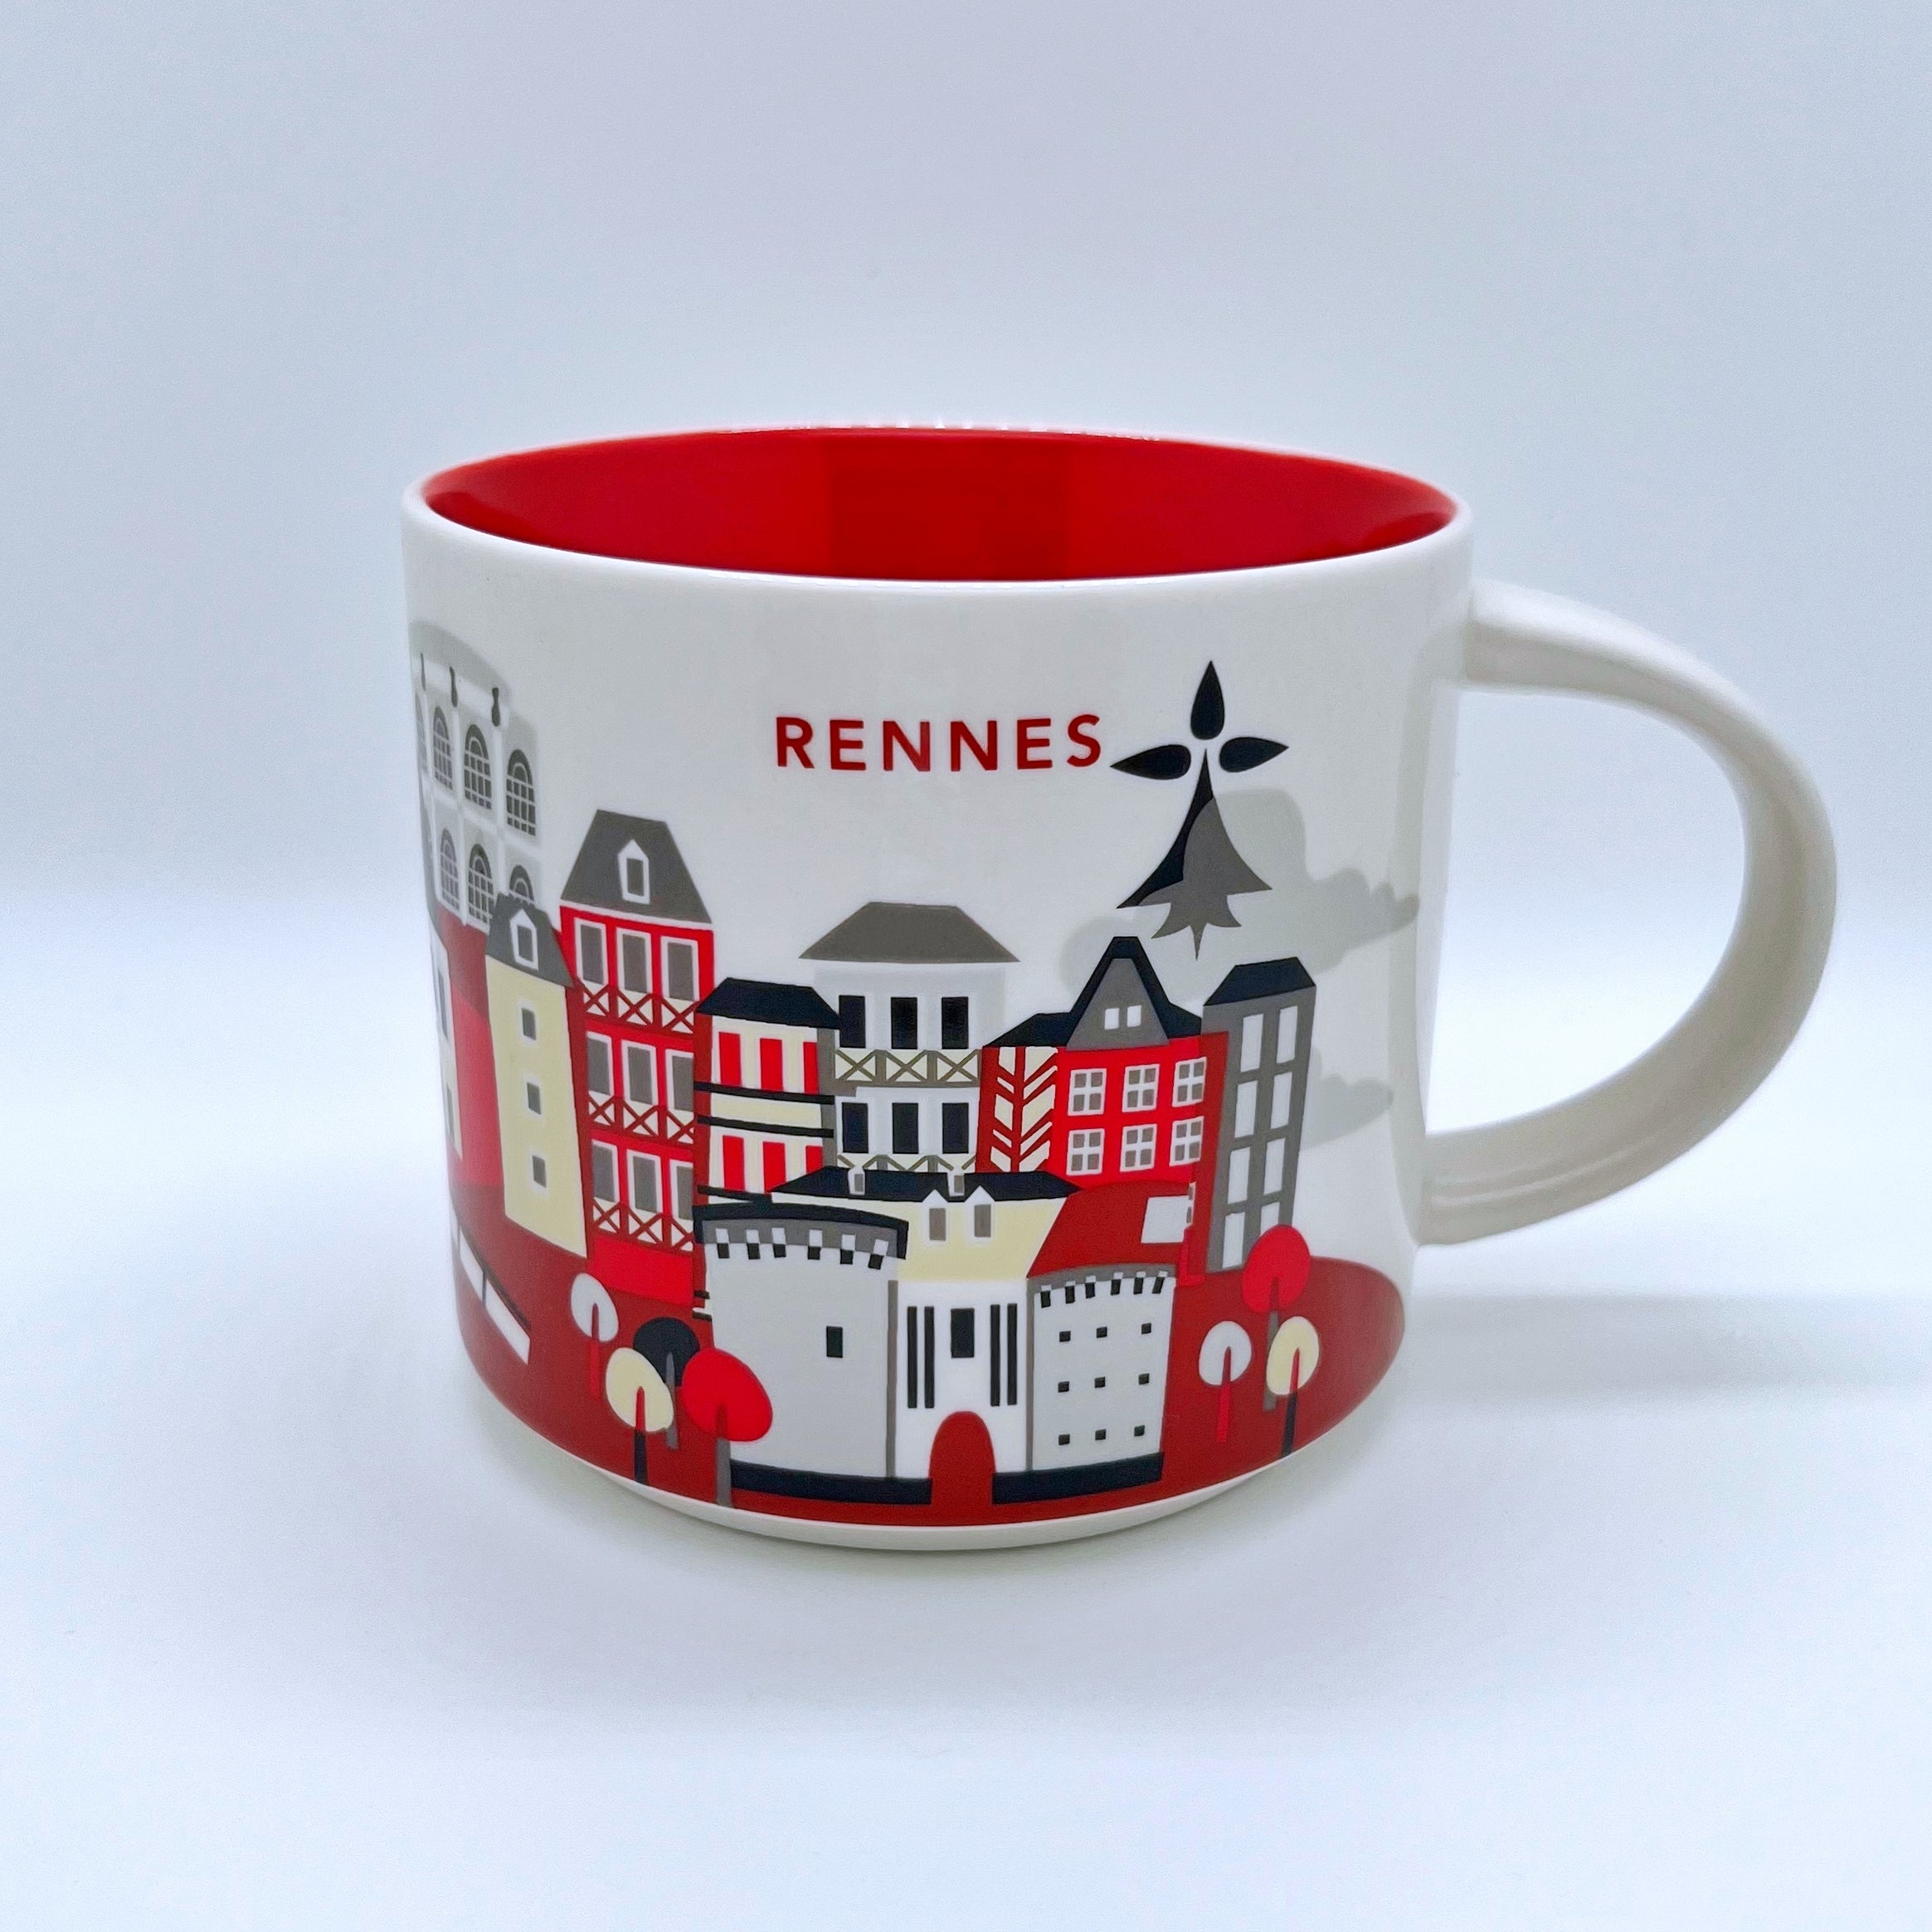 Kaffee Tee und Cappuccino Tasse von Starbucks mit gemalten Bildern aus der Stadt Rennes